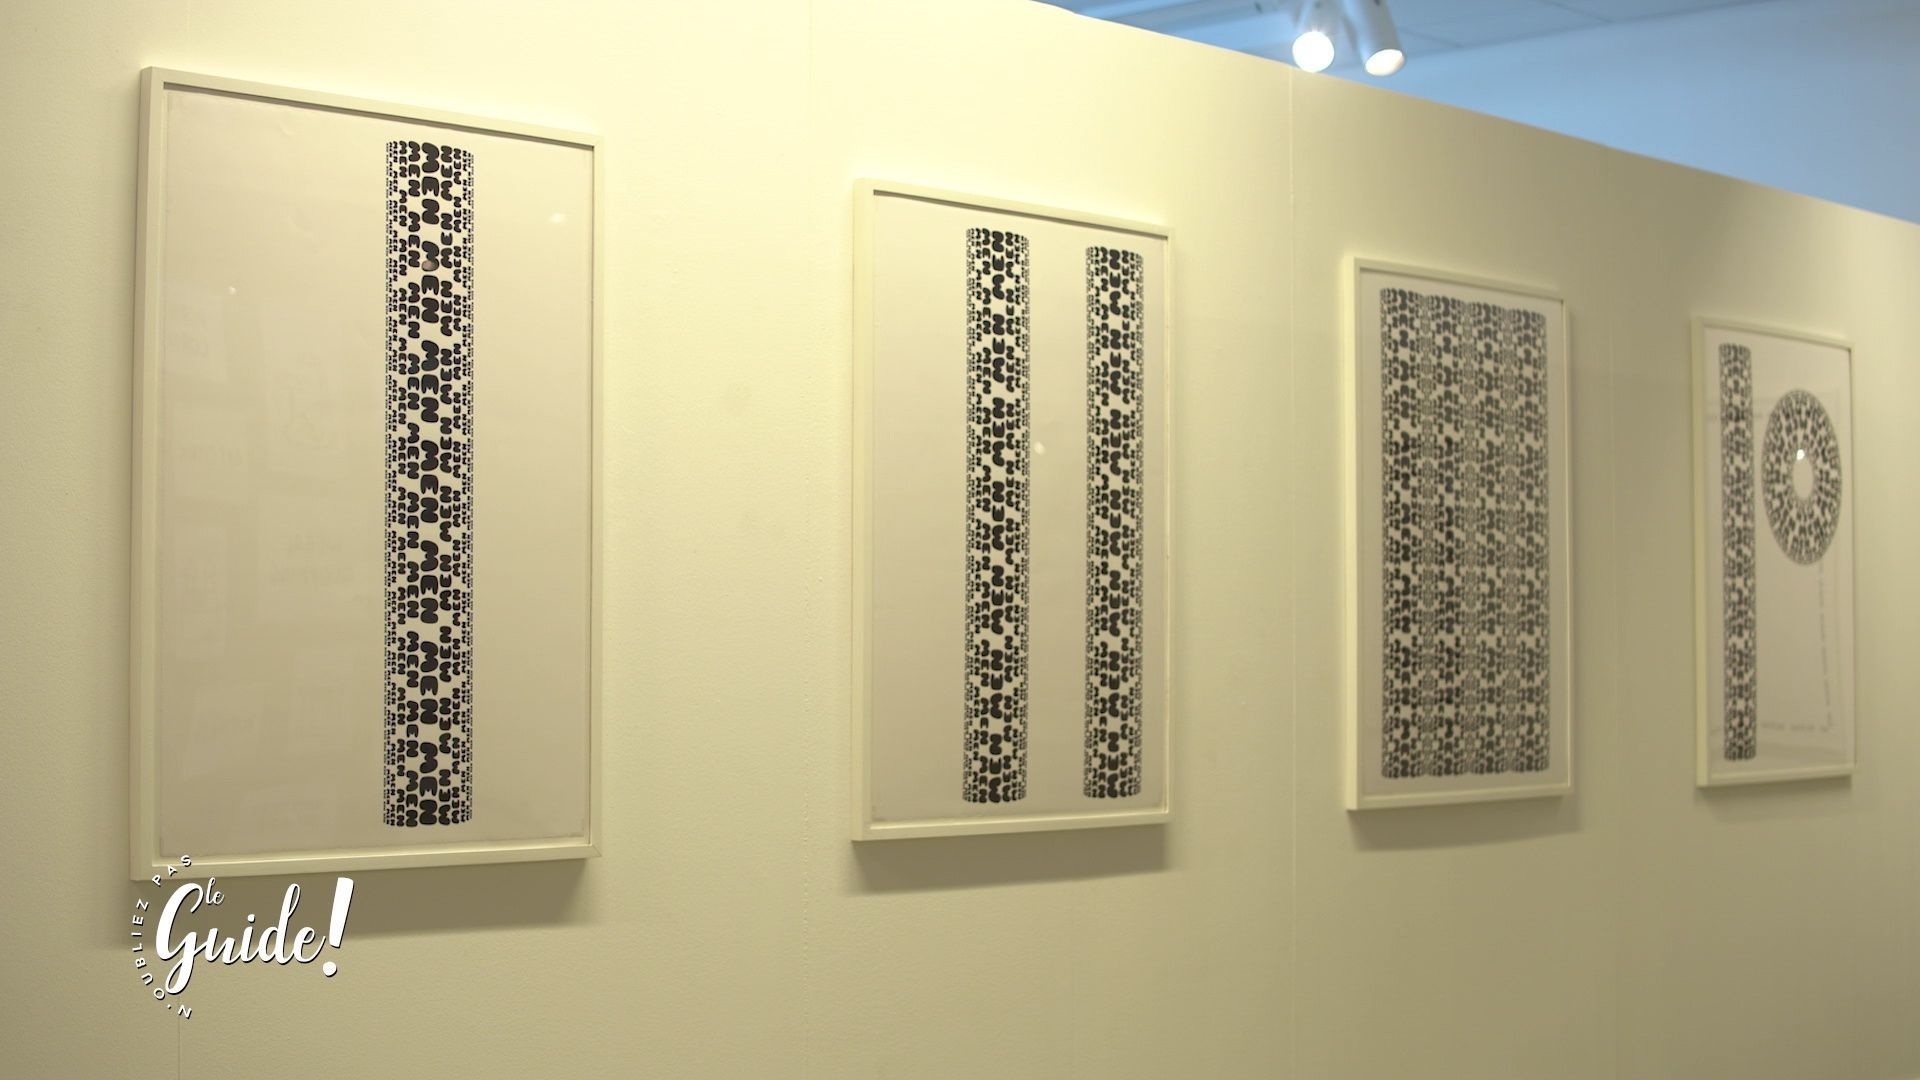 Images sérielles exposées au Centre de la Gravure et de l’Image Imprimée à la Louvière.